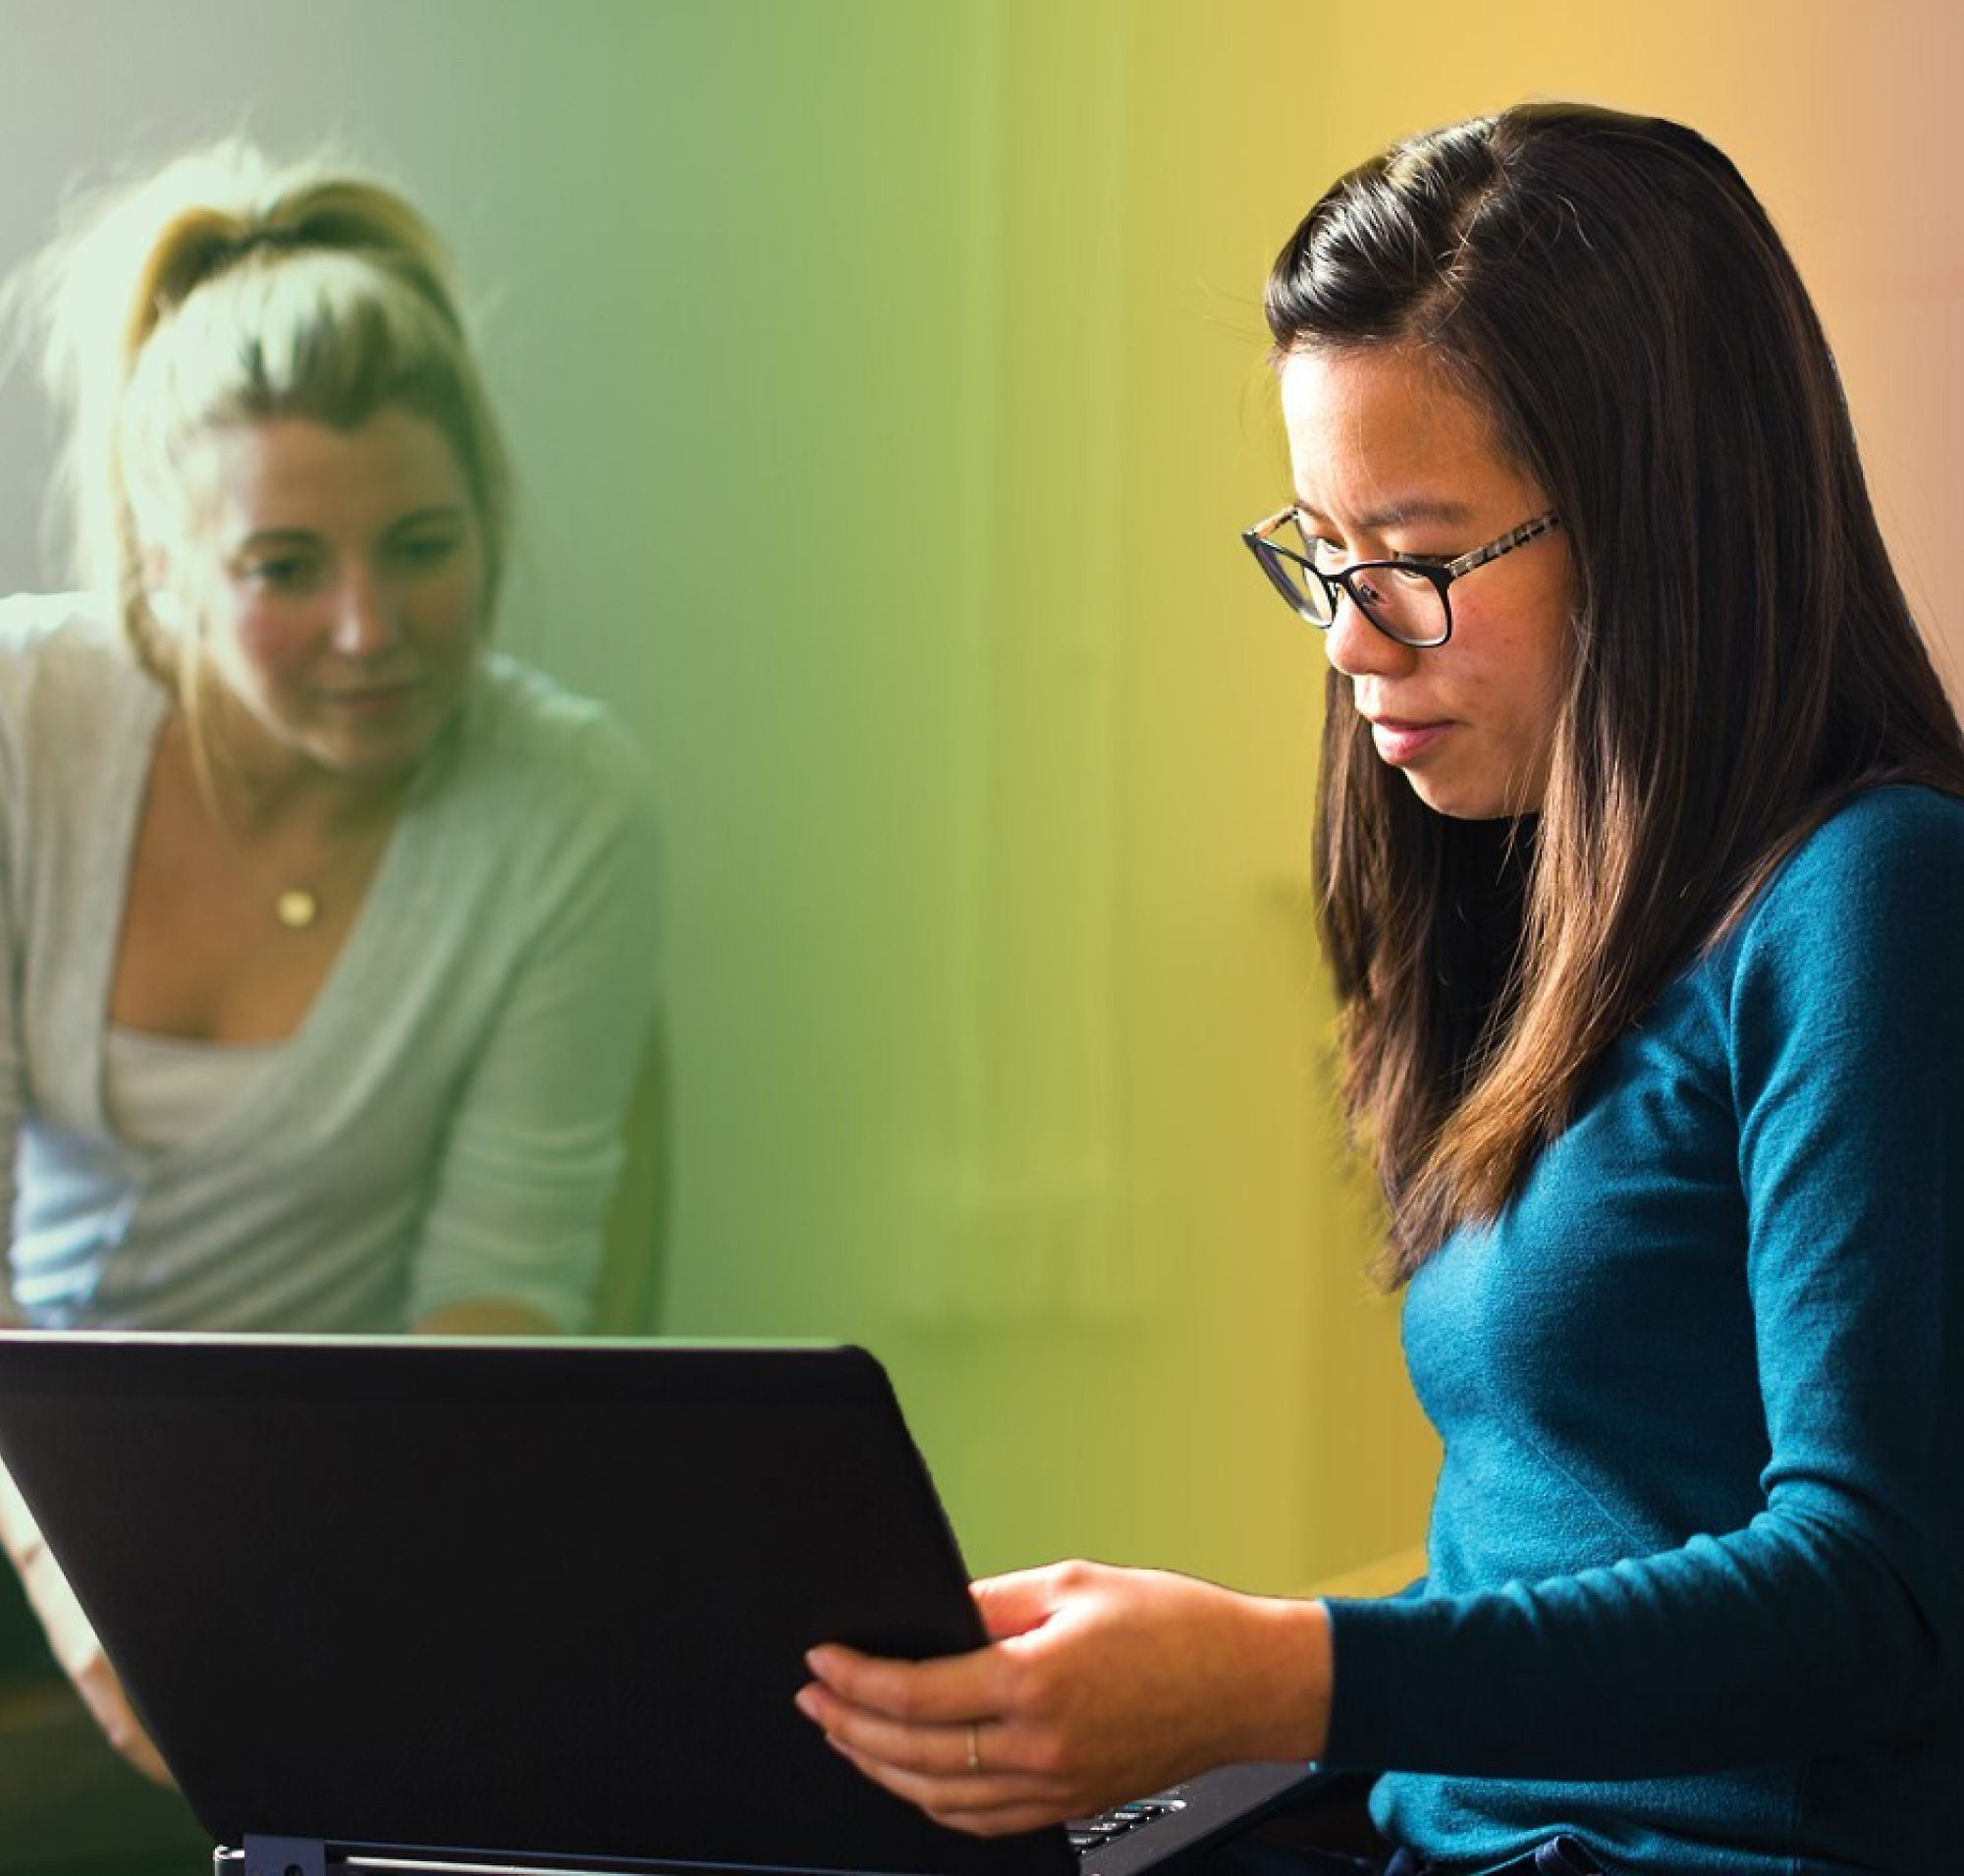 Dos mujeres, una con el pelo rubio y la otra con gafas, trabajan juntas en un portátil en una habitación iluminada con colores vivos.